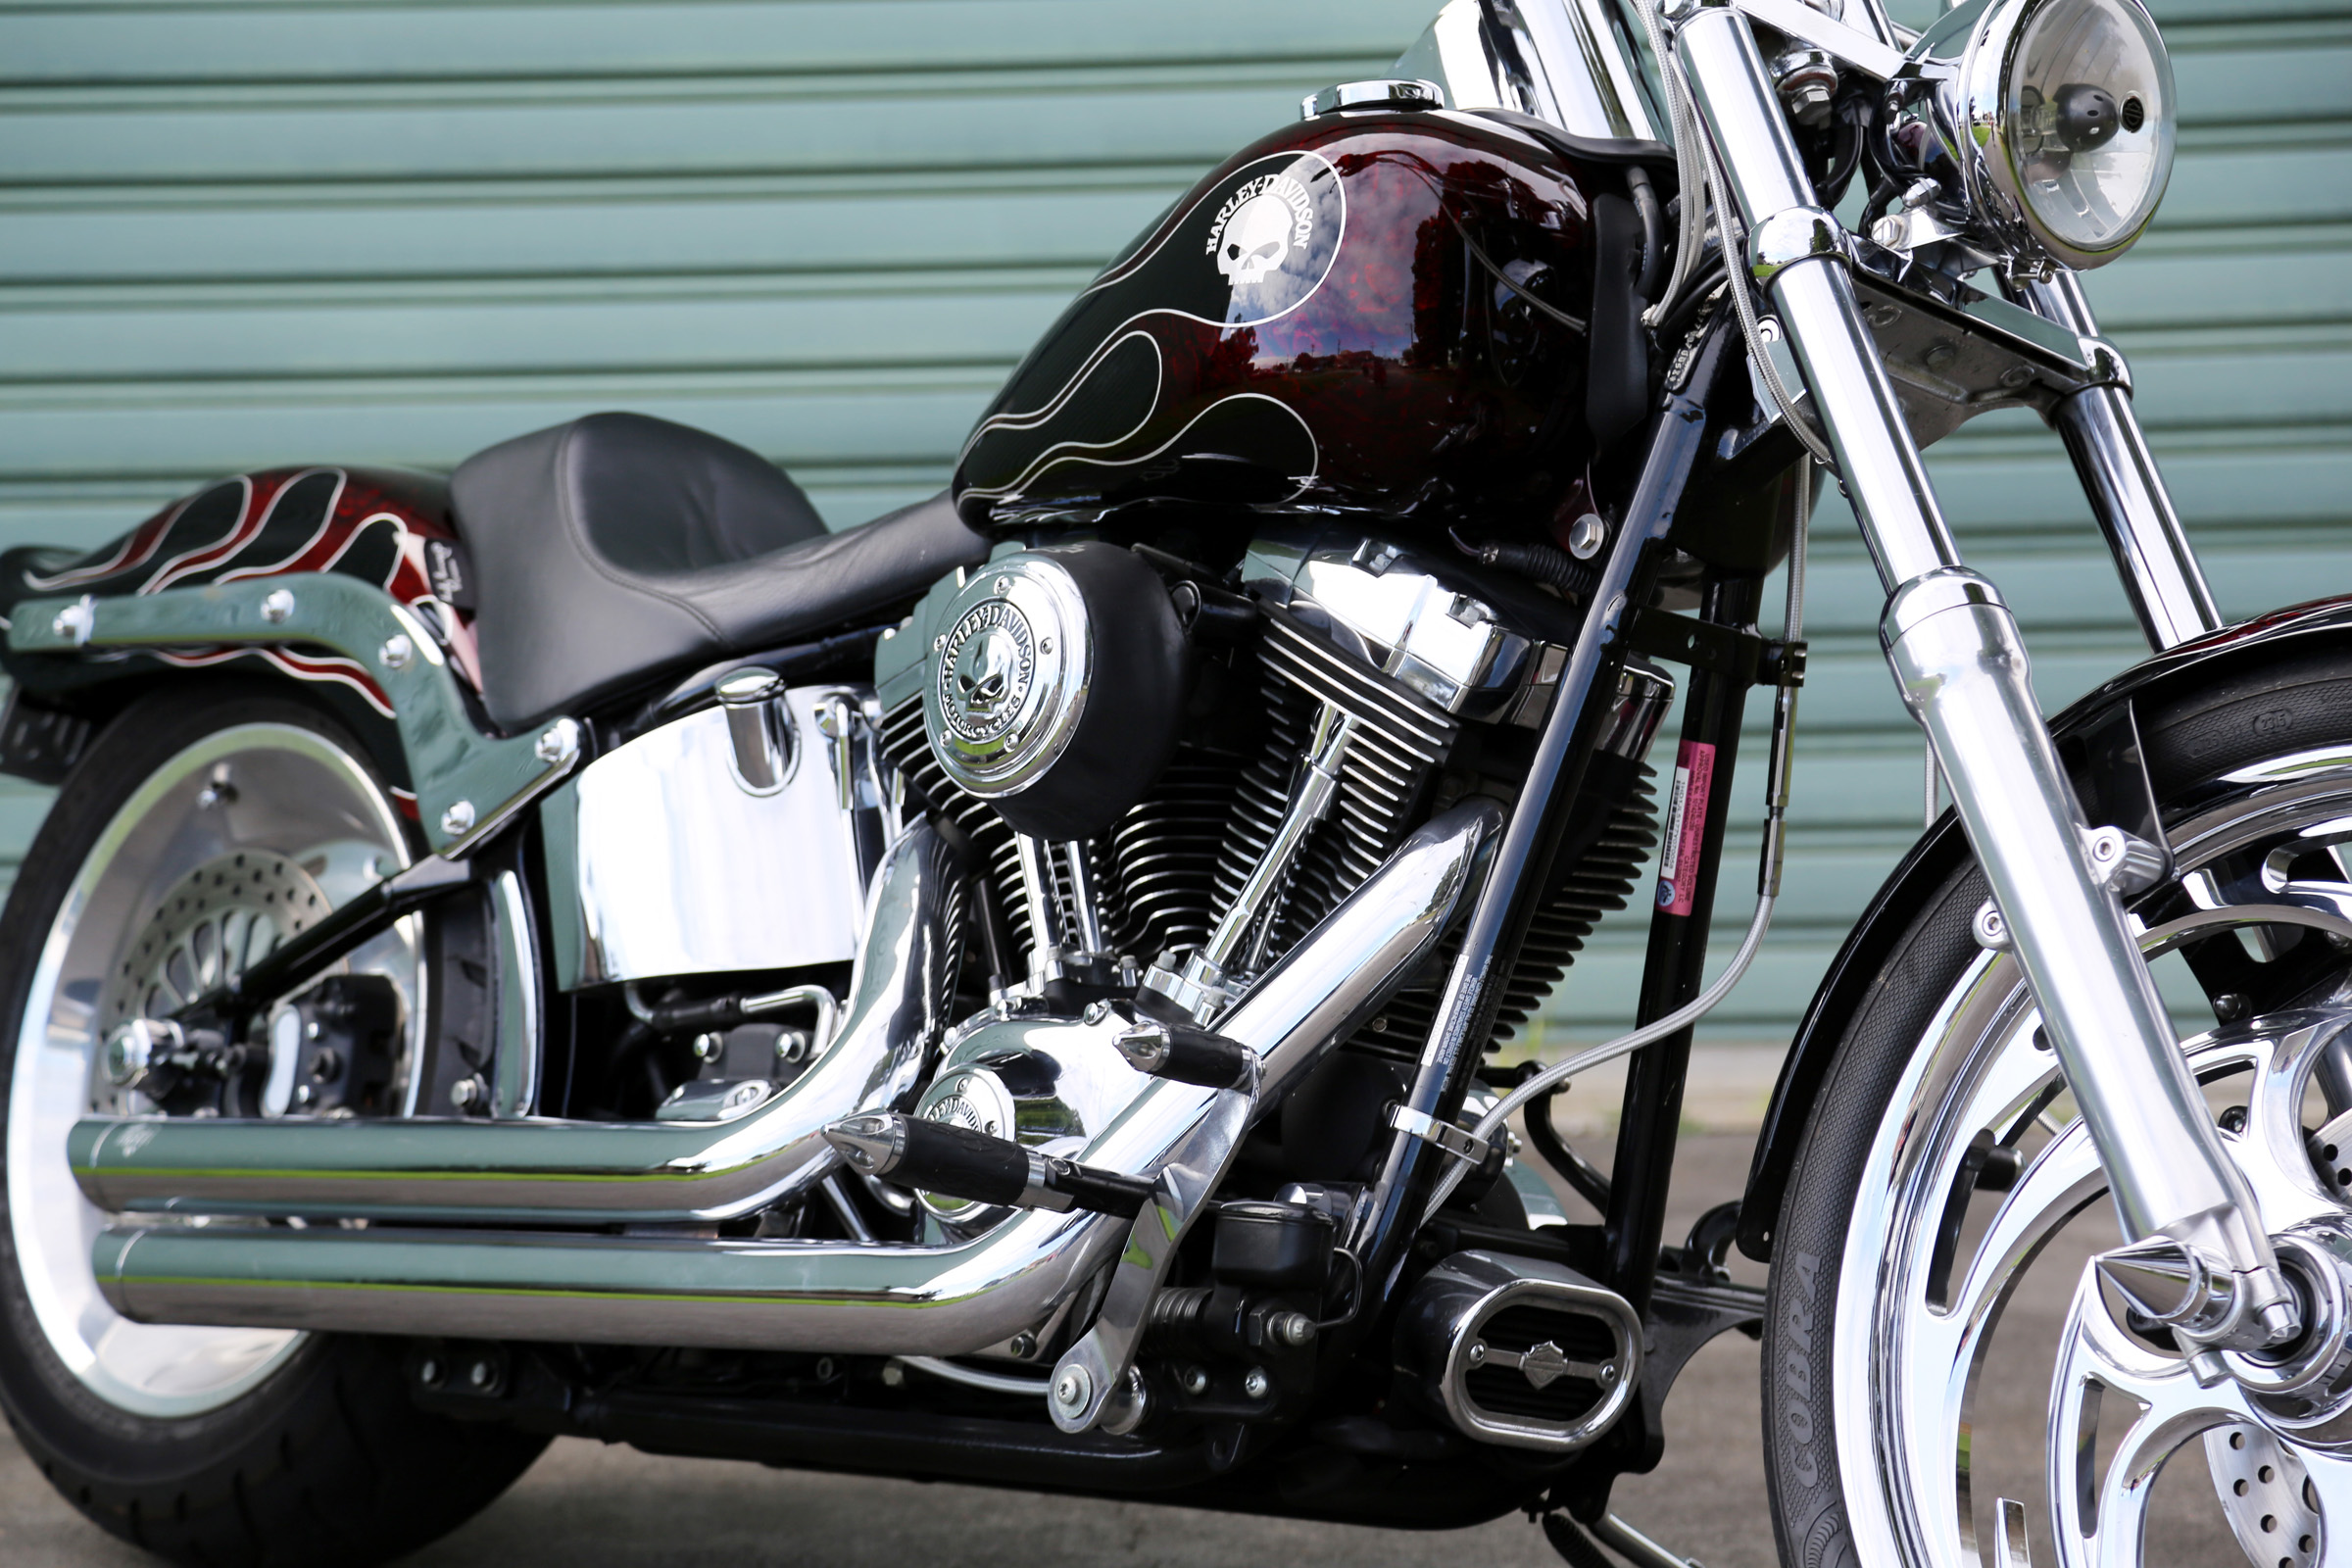 2007 Harley Davidson Softail Custom detail17